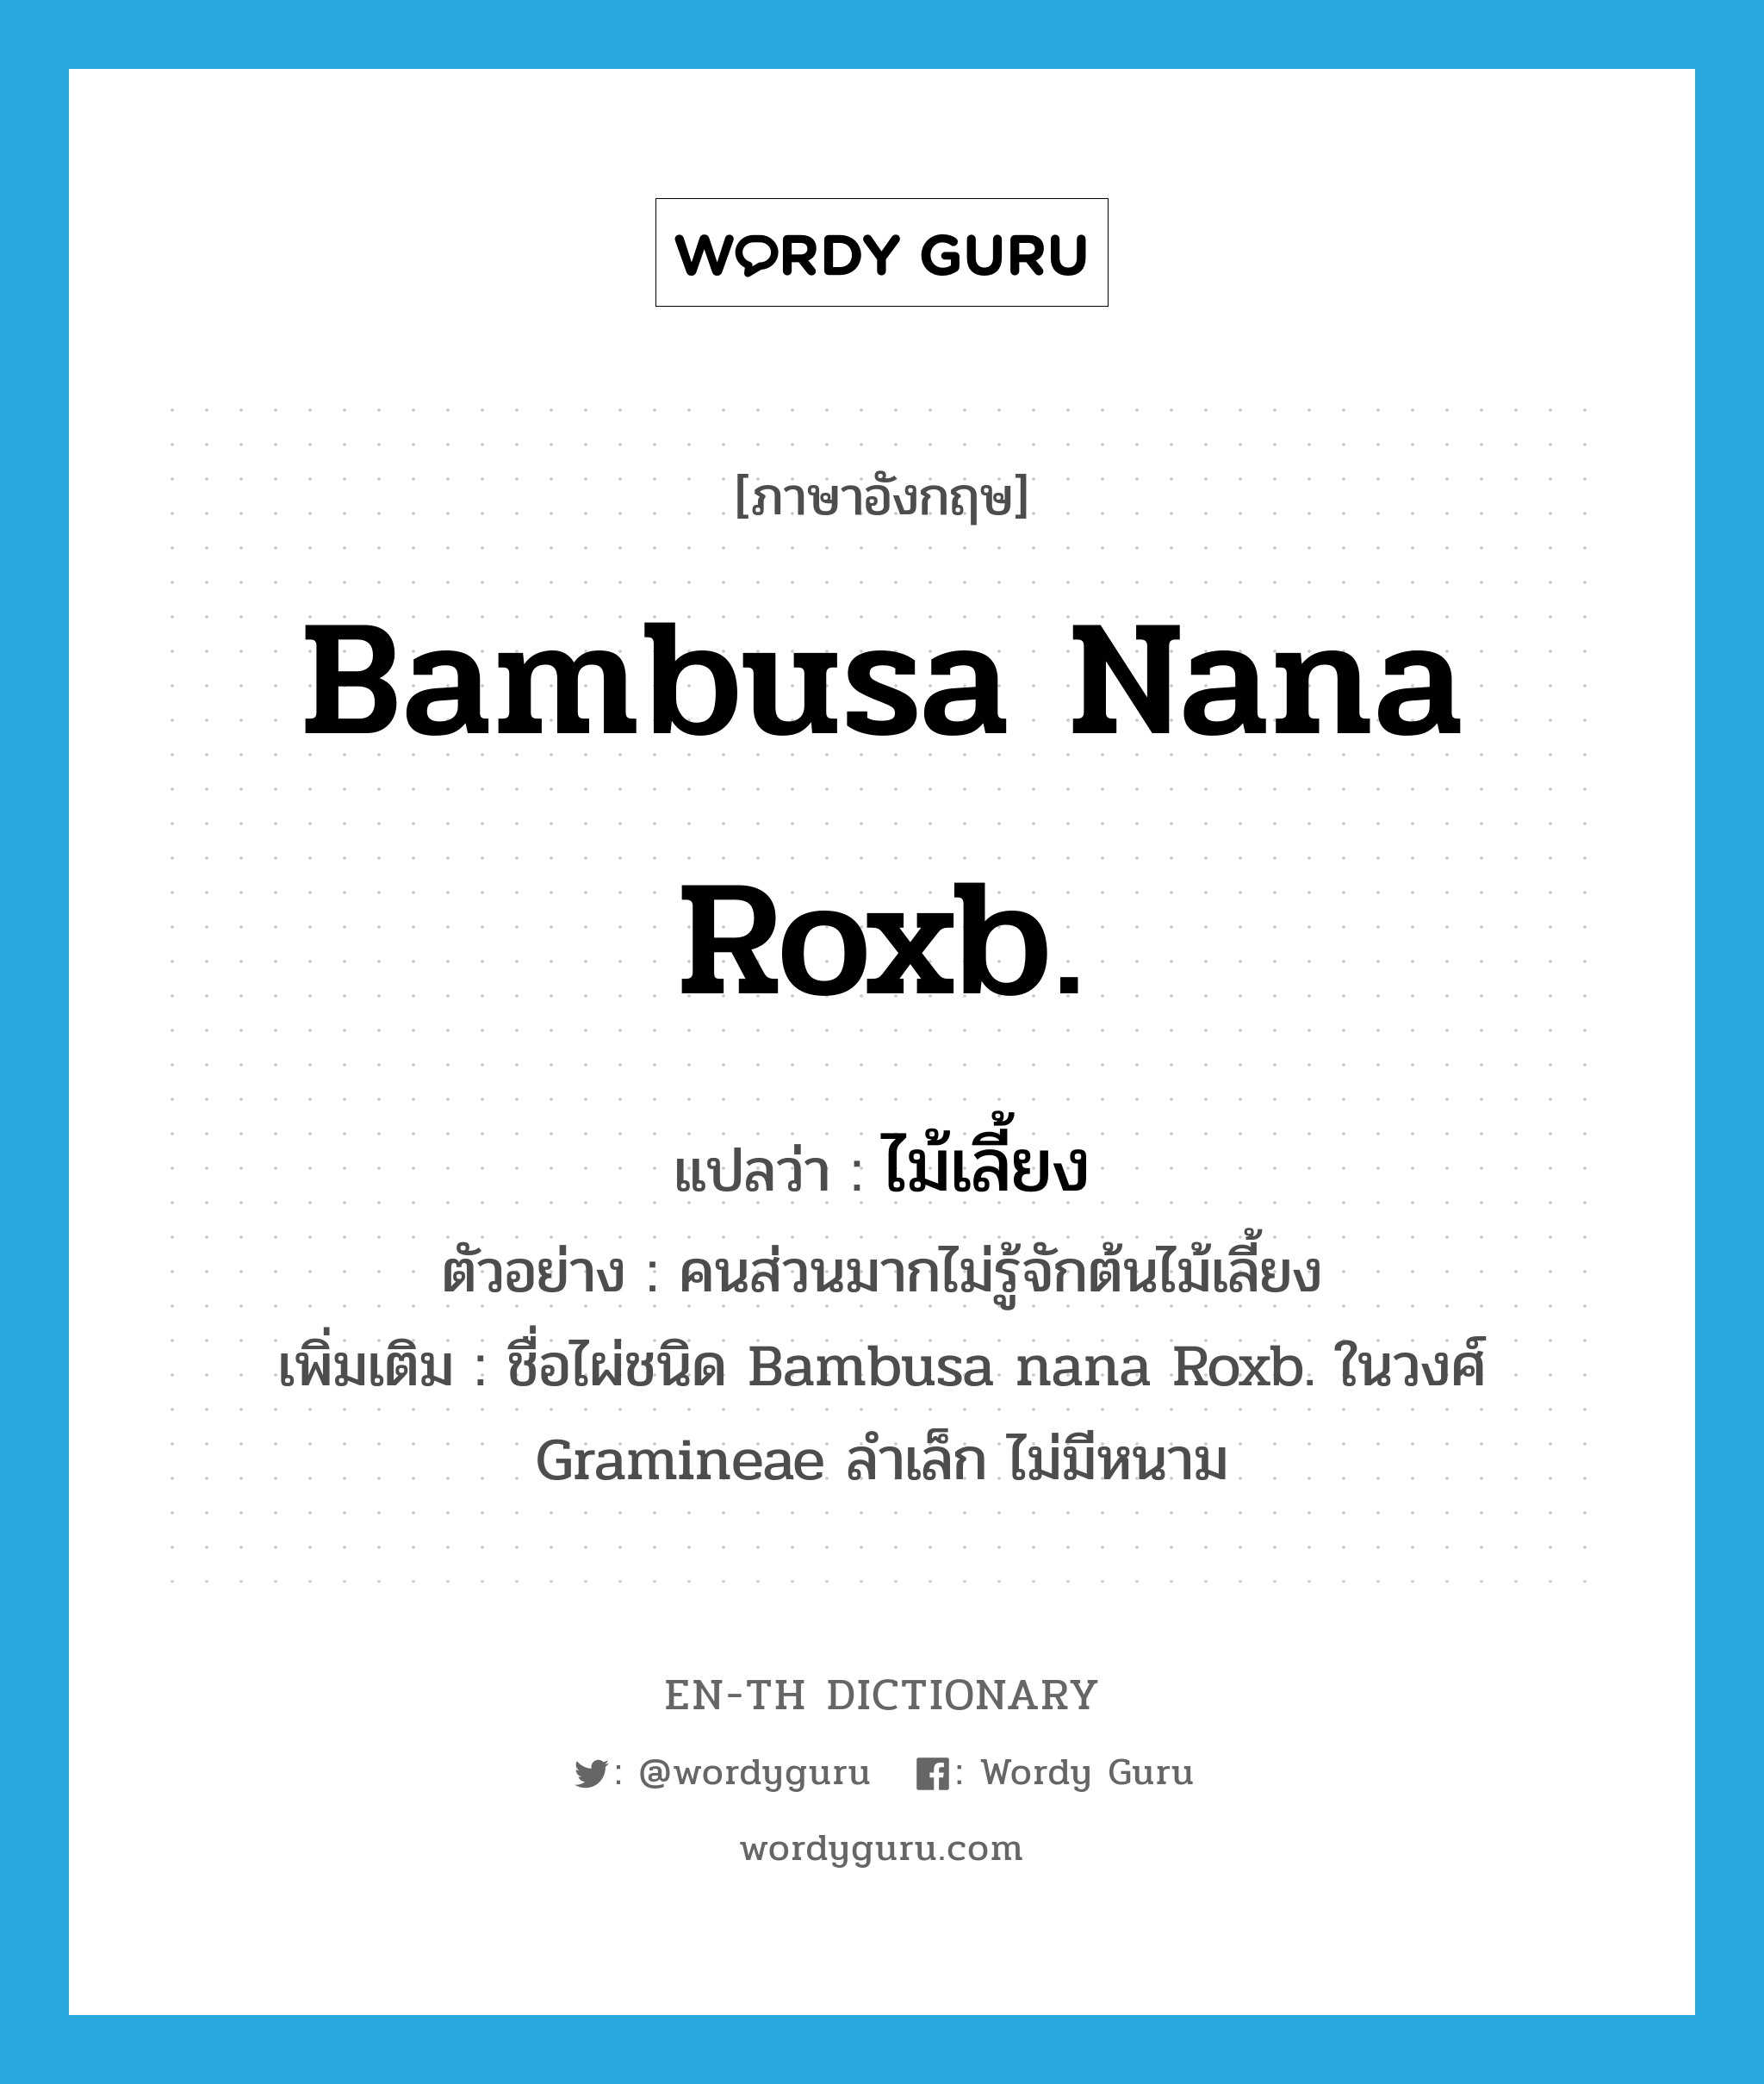 Bambusa nana Roxb. แปลว่า?, คำศัพท์ภาษาอังกฤษ Bambusa nana Roxb. แปลว่า ไม้เลี้ยง ประเภท N ตัวอย่าง คนส่วนมากไม่รู้จักต้นไม้เลี้ยง เพิ่มเติม ชื่อไผ่ชนิด Bambusa nana Roxb. ในวงศ์ Gramineae ลำเล็ก ไม่มีหนาม หมวด N